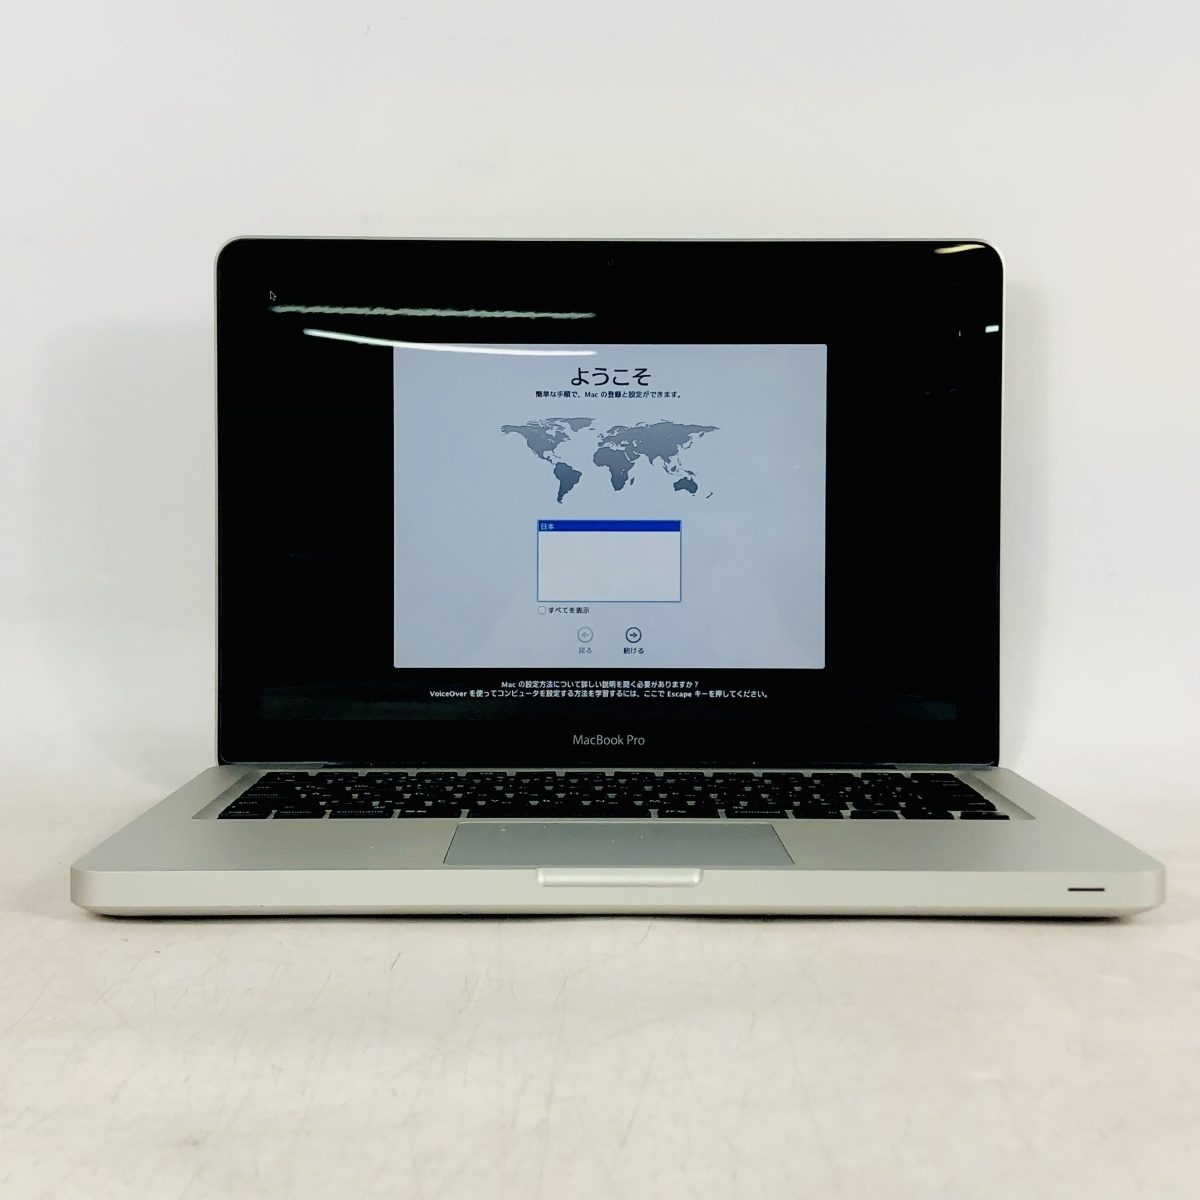 価格.com - Apple MacBook Pro 2500/13 MD101J/A 価格比較